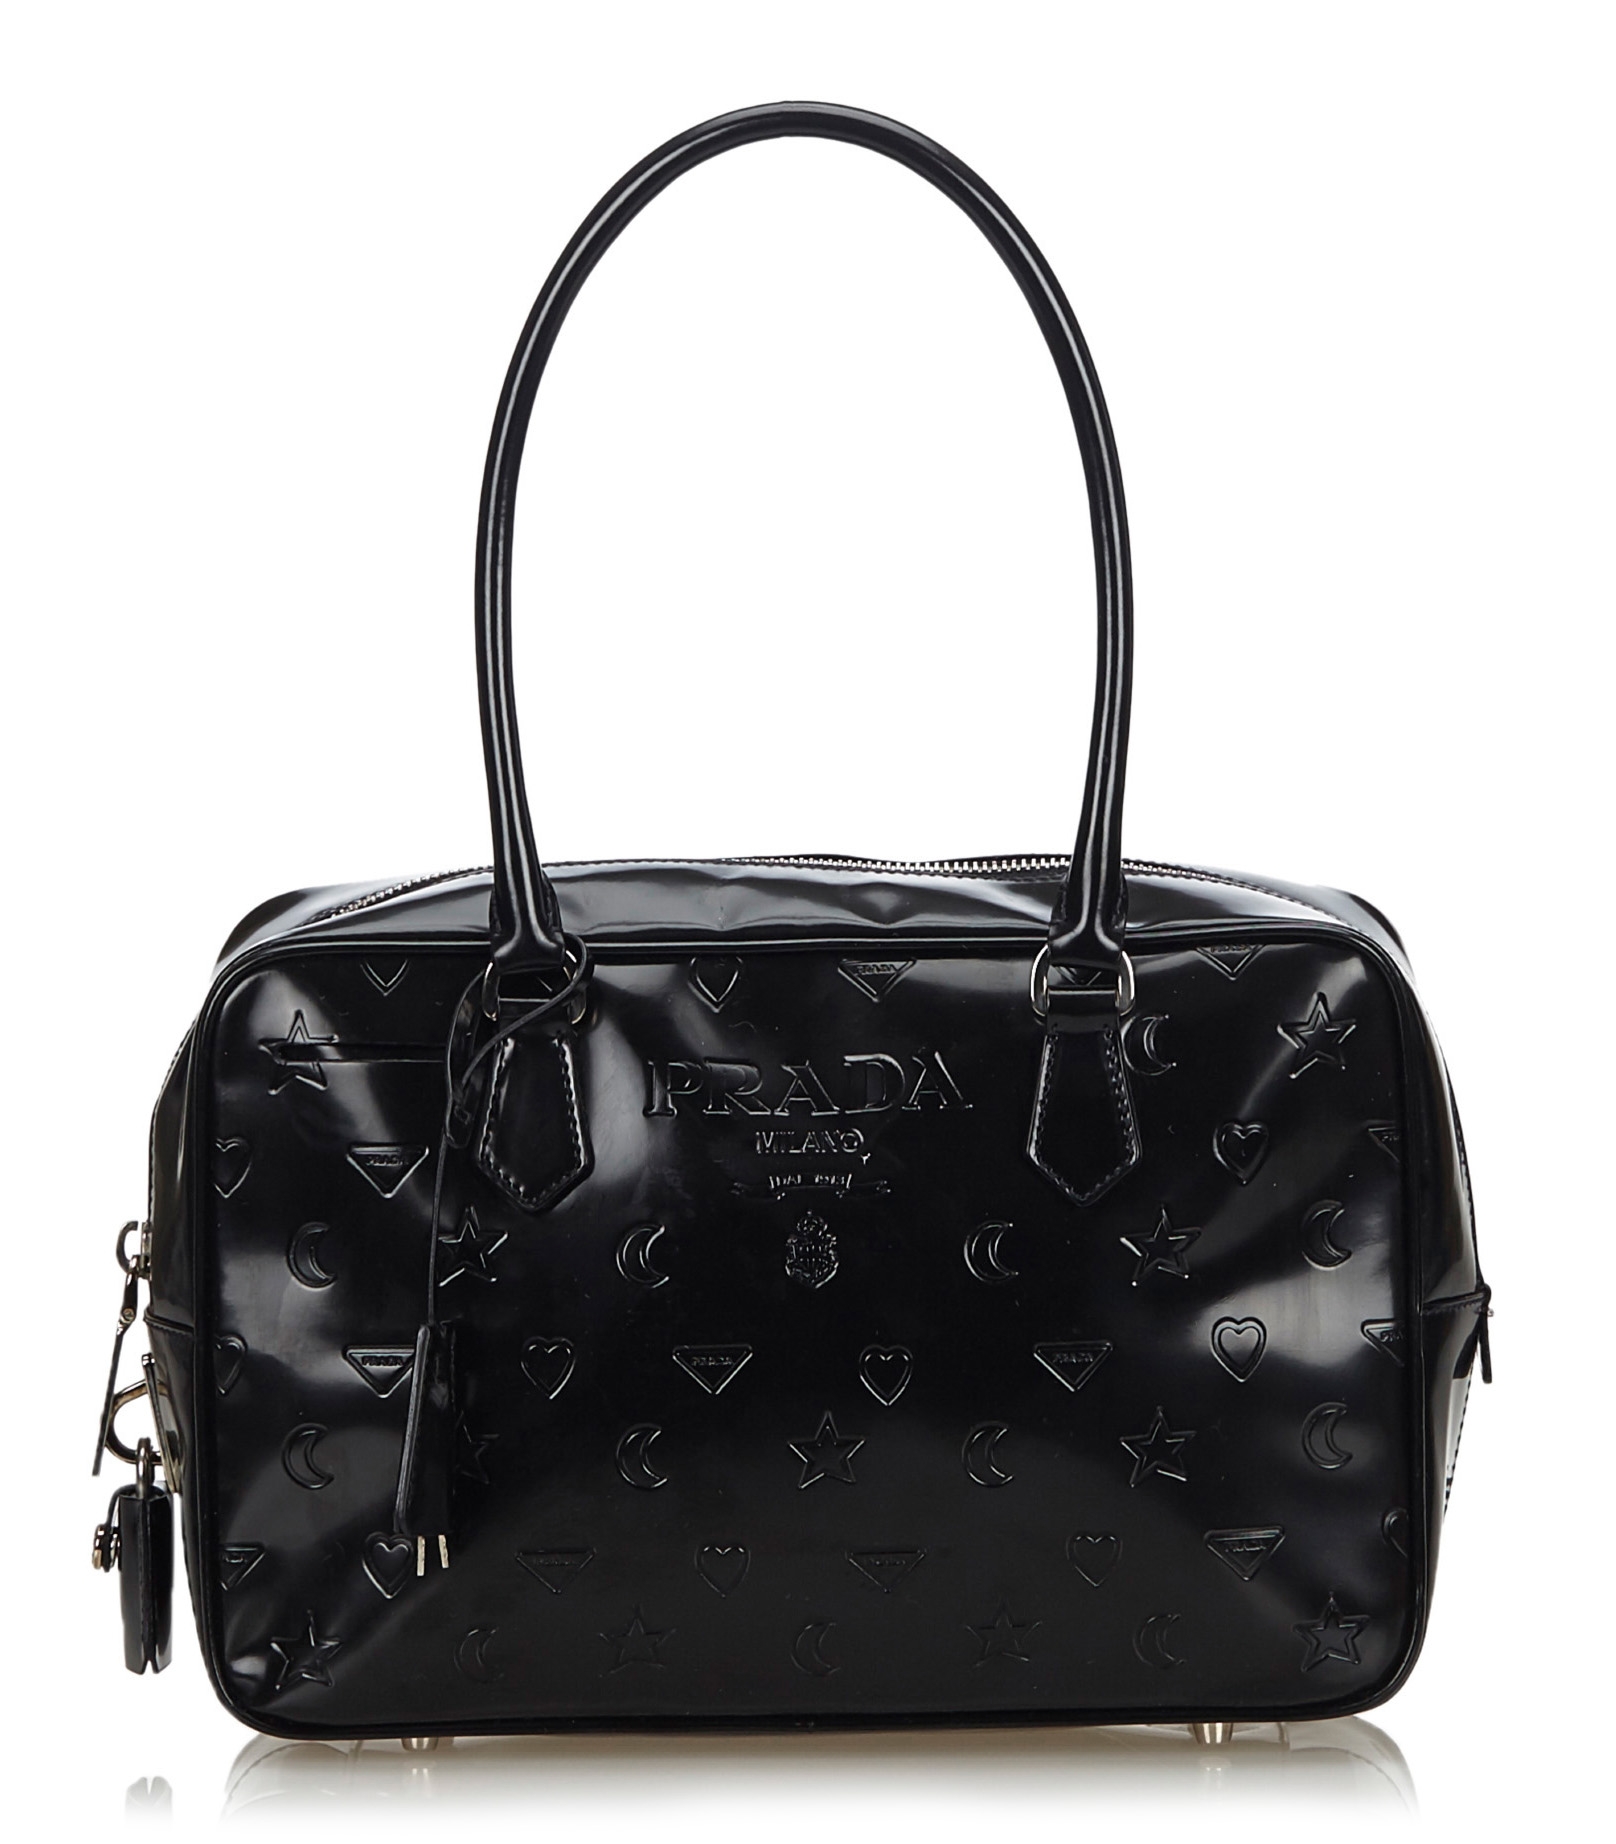 Prada Vintage - Embossed Leather Handbag Bag - Black - Leather Handbag -  Luxury High Quality - Avvenice